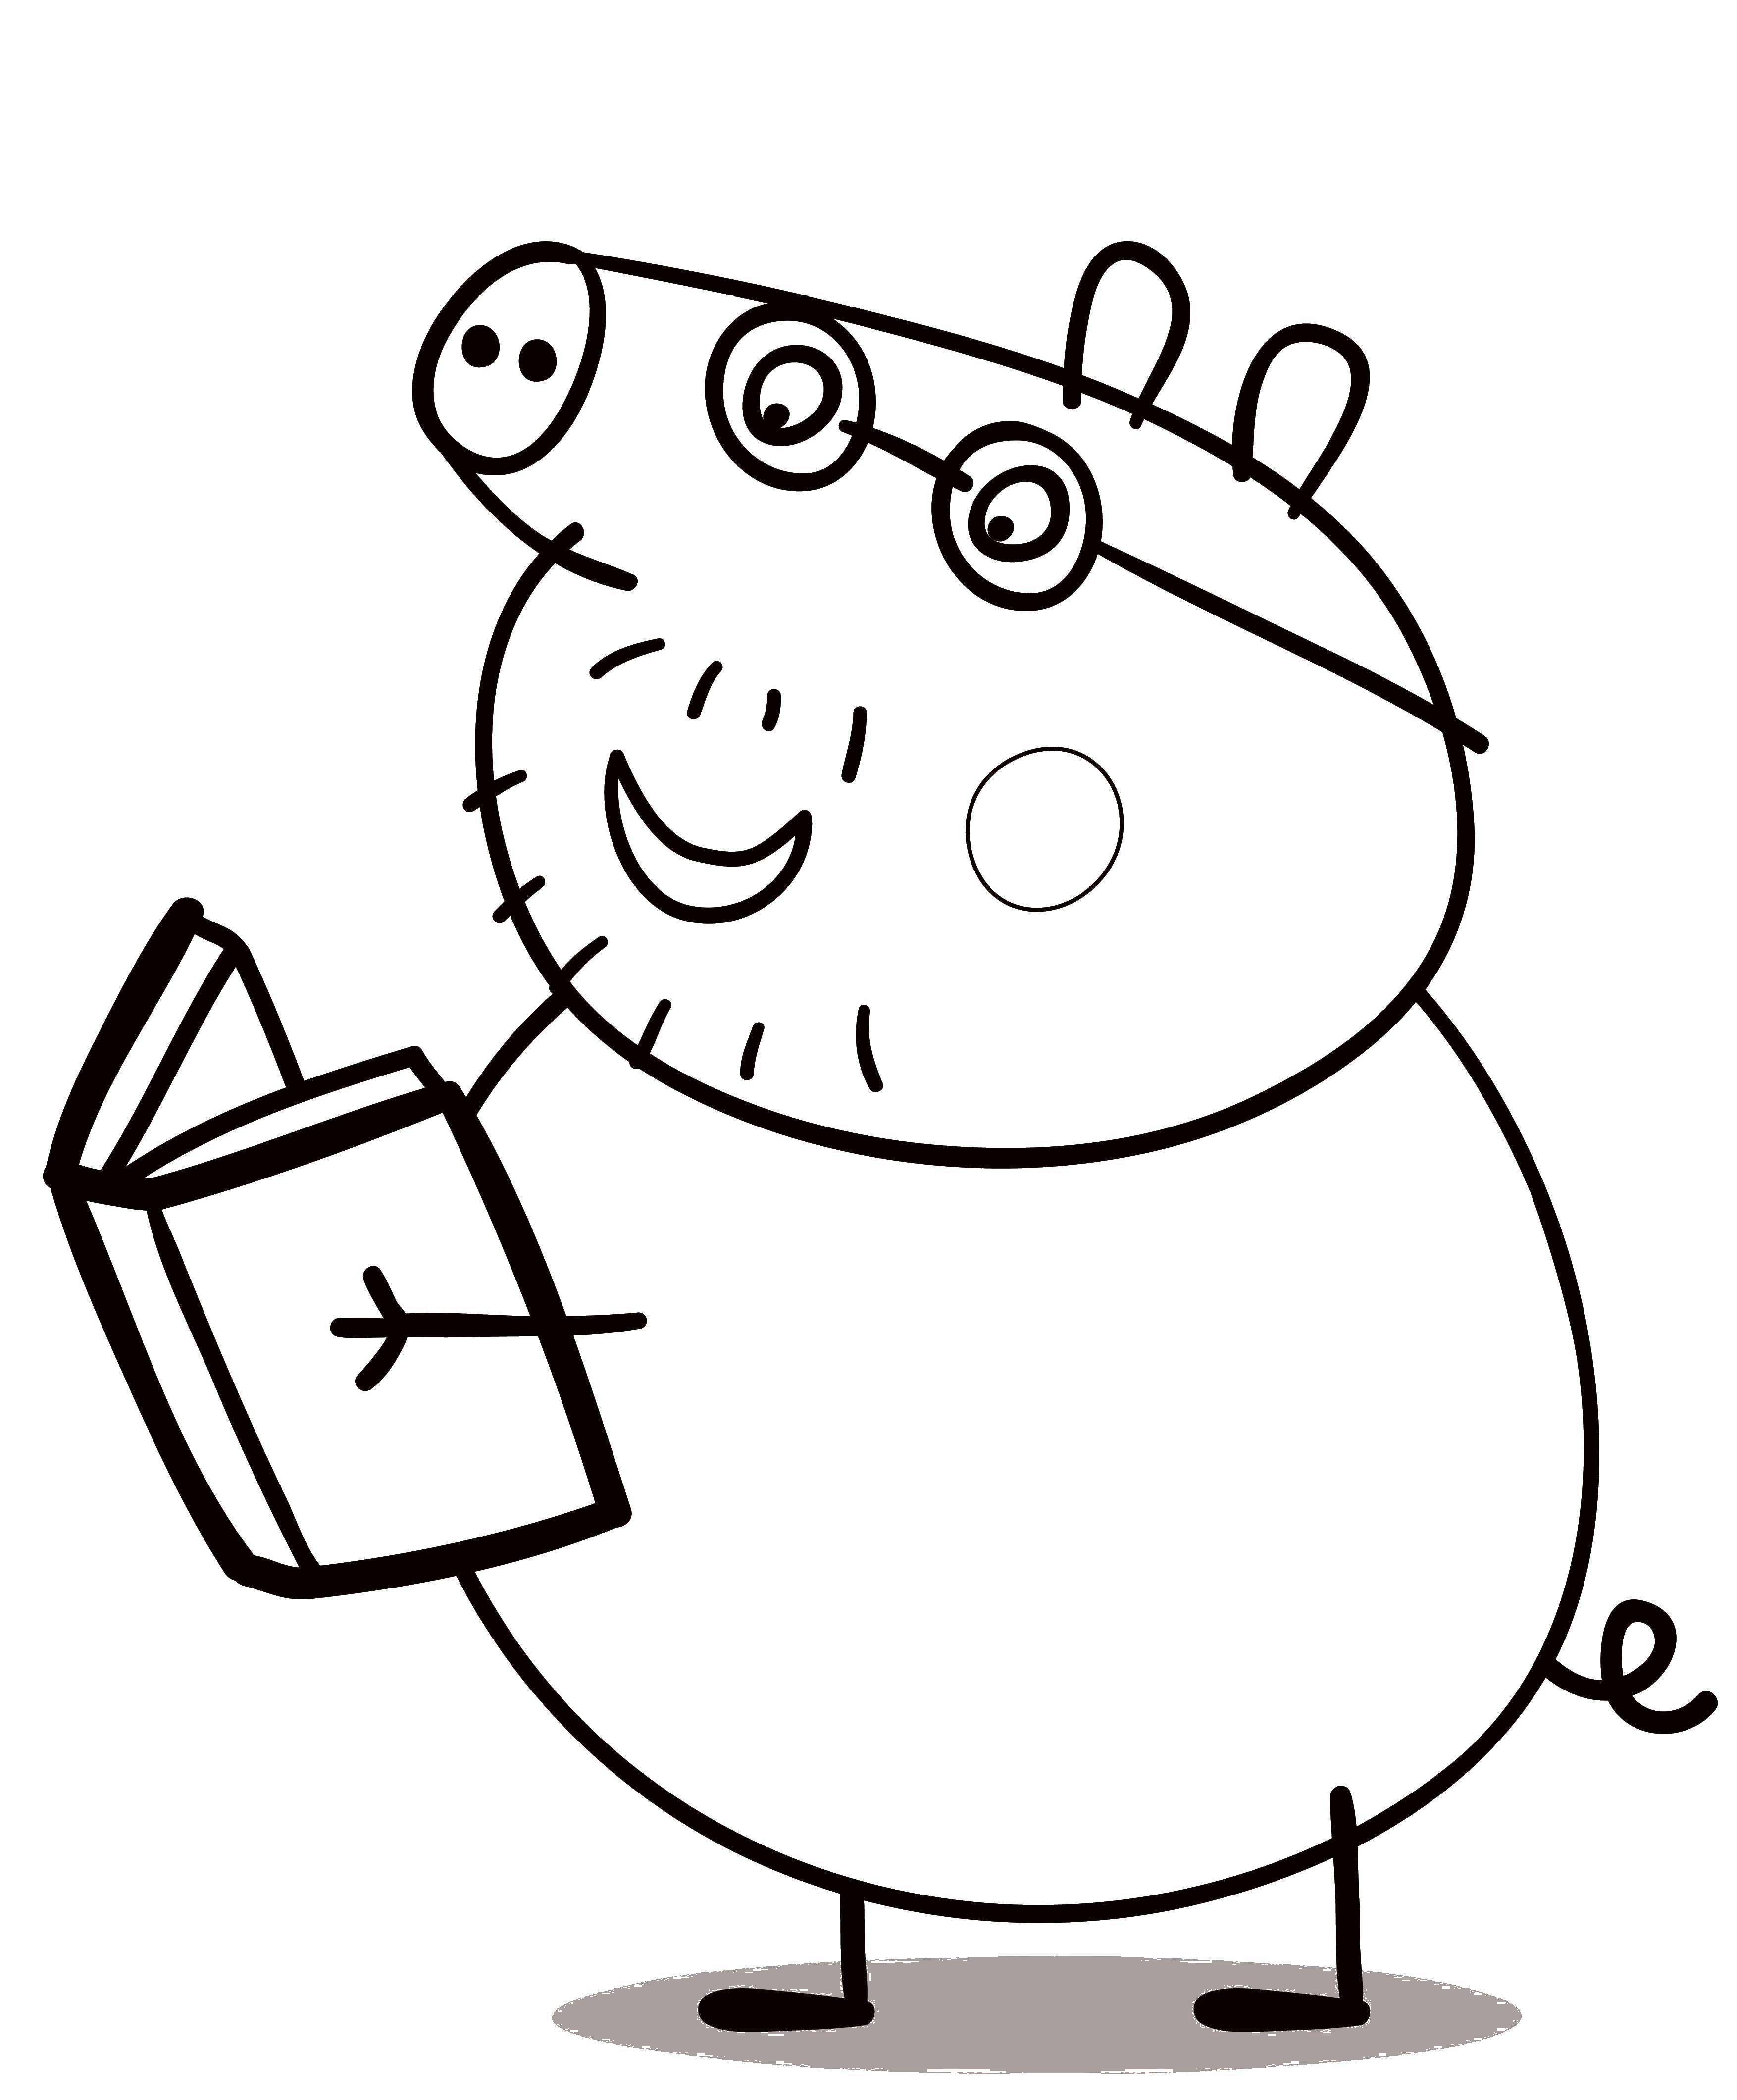 Познавательные и забавные раскраски для детей про свинку Пеппу  Папа свин читает книгу